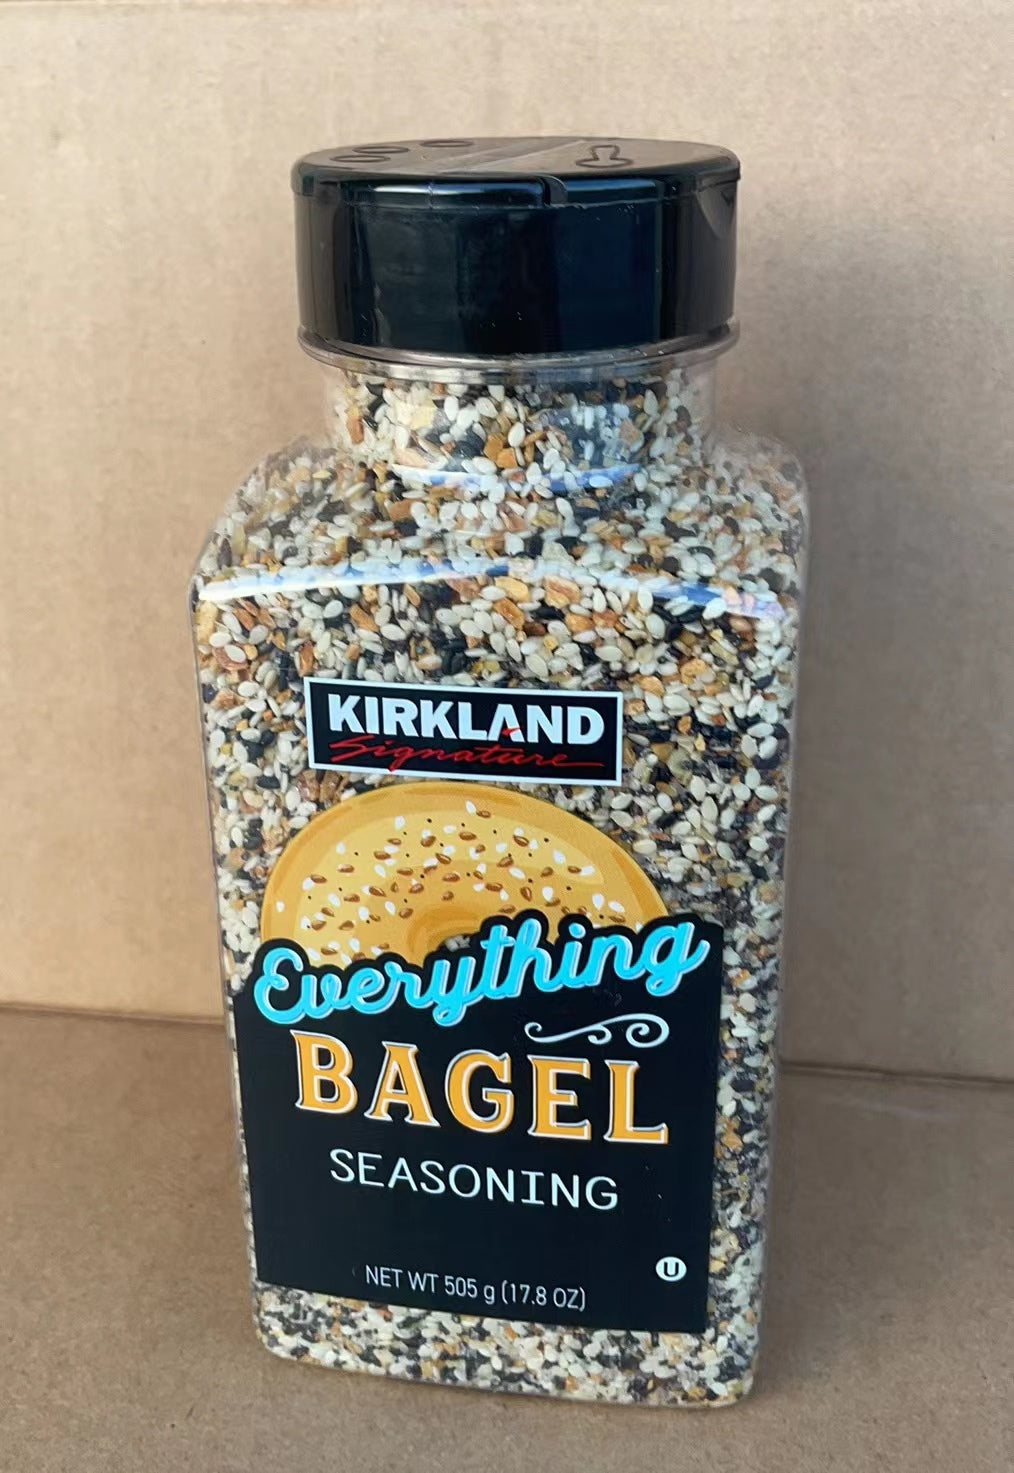 Kirkland Signature Everything Bagel Seasoning Spice Mix 17.8 oz/ 505 g